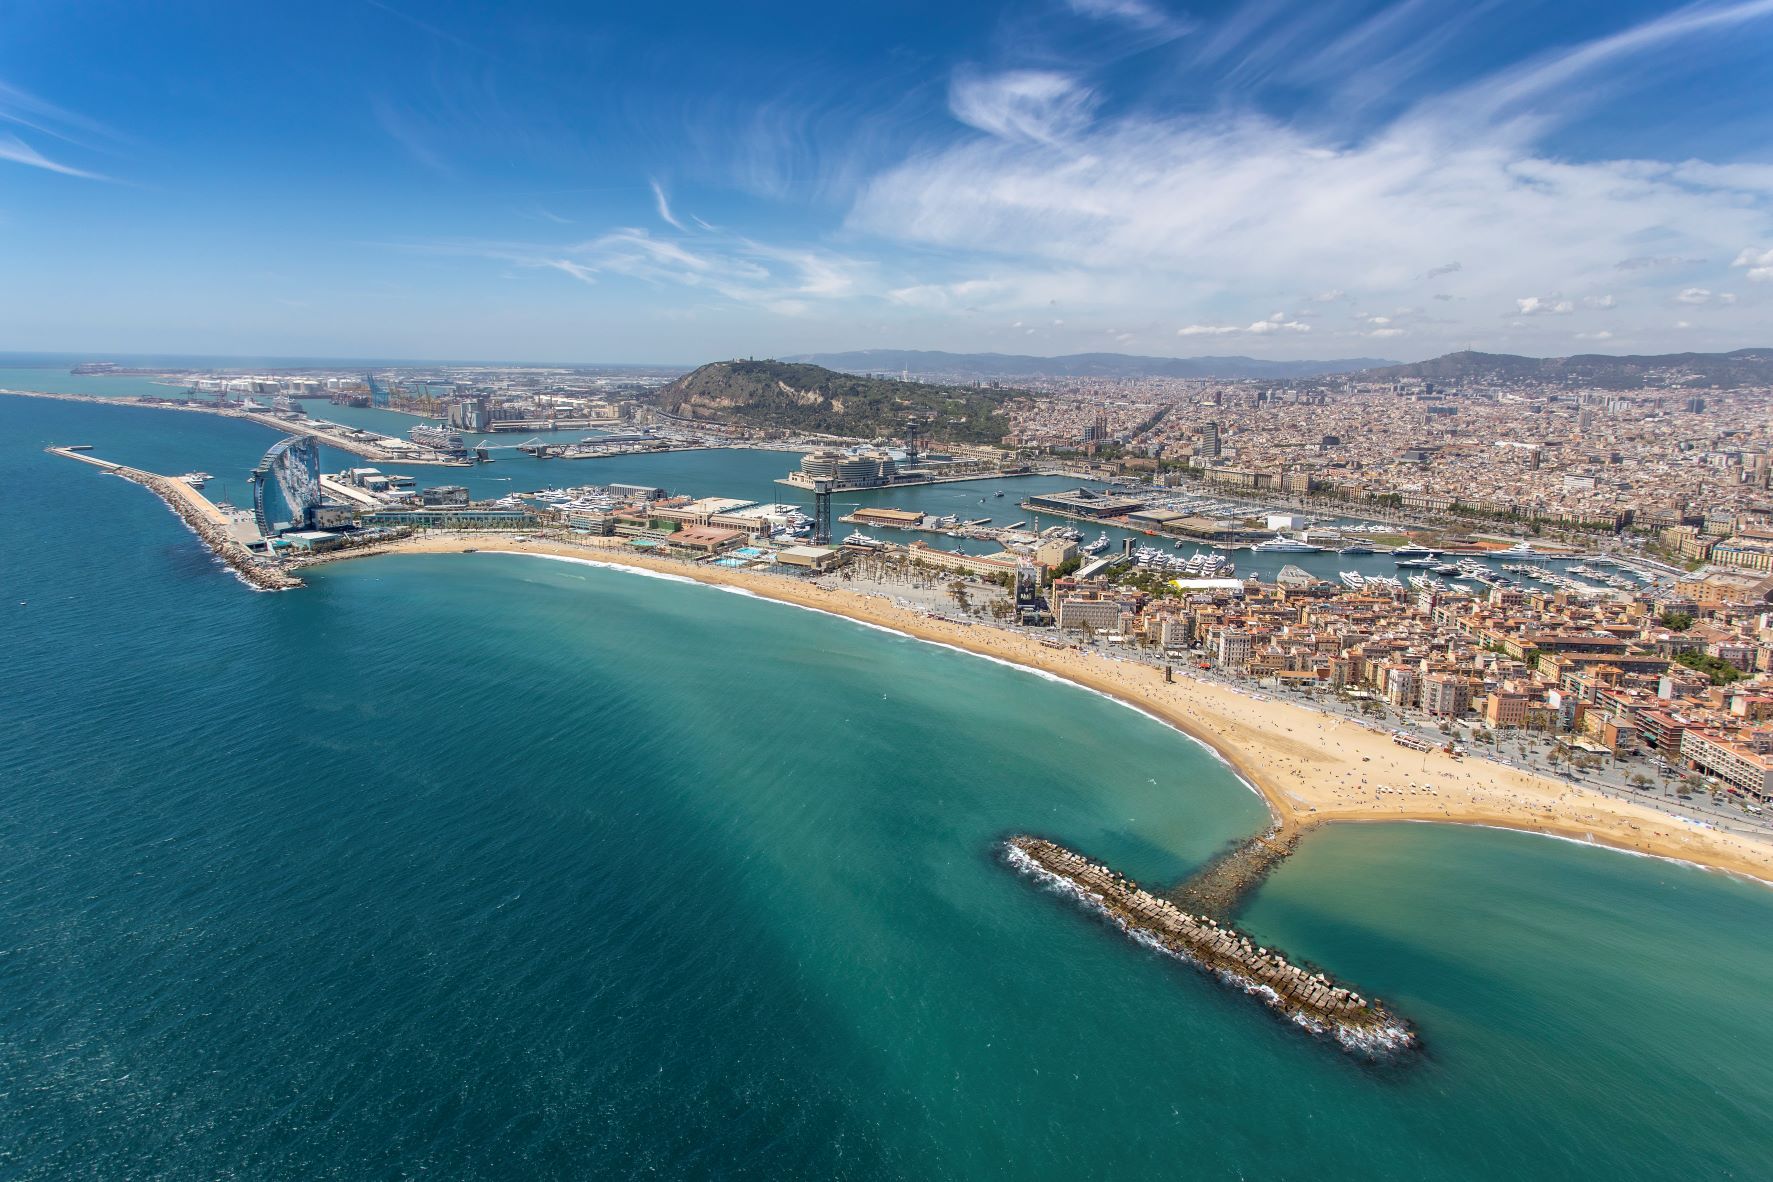 Para mitigar los efectos de los temporales, el Port de Barcelona combinará medidas 'duras' y 'blandas'. (Port de Barcelona)